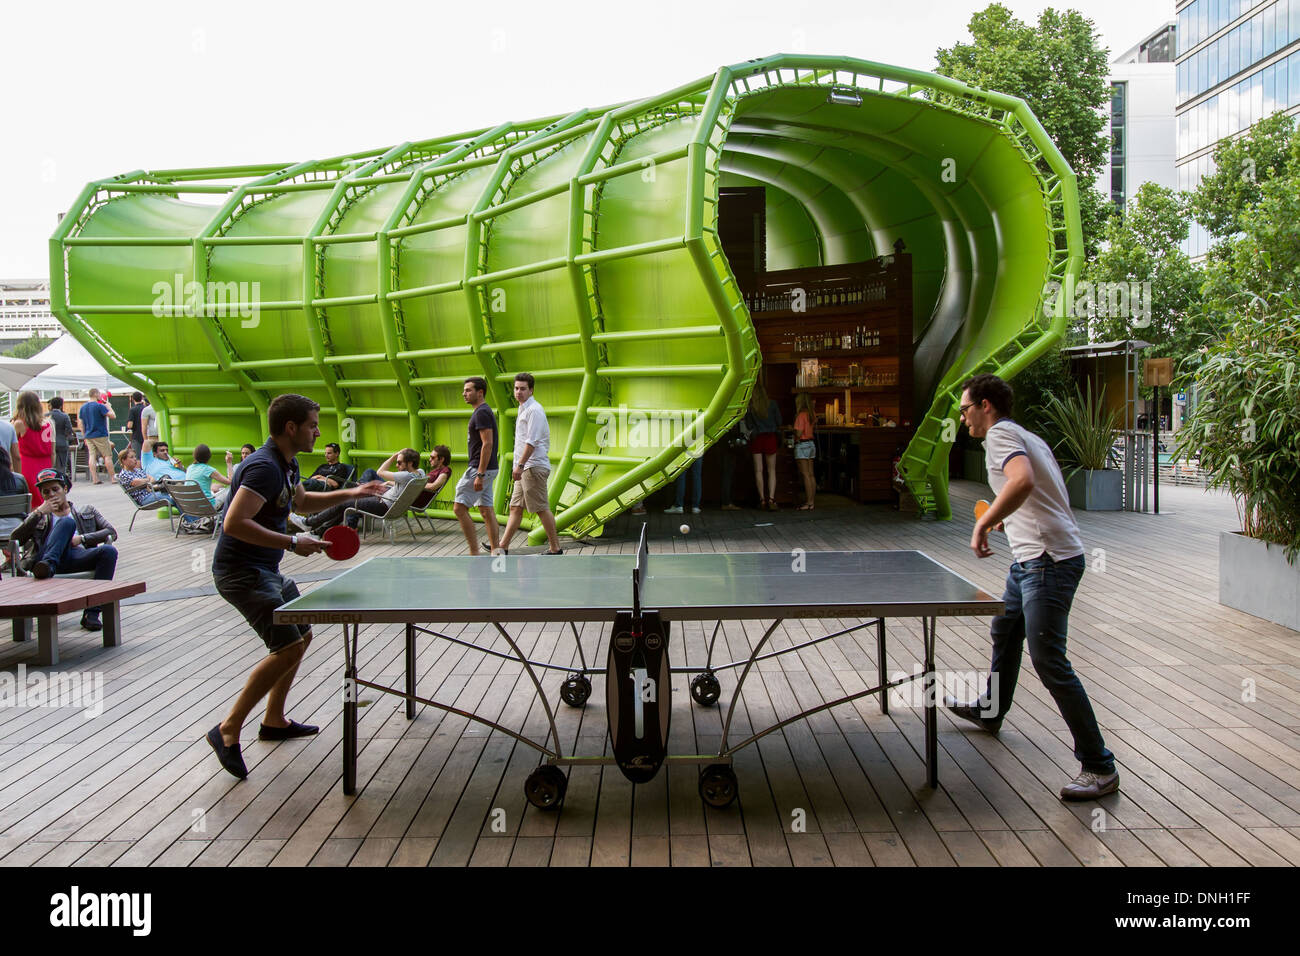 PING-PONG gioco sulla terrazza presso il WANDERLUST, città della moda e del design, il dock, 13esimo arrondissement, Parigi, Francia Foto Stock